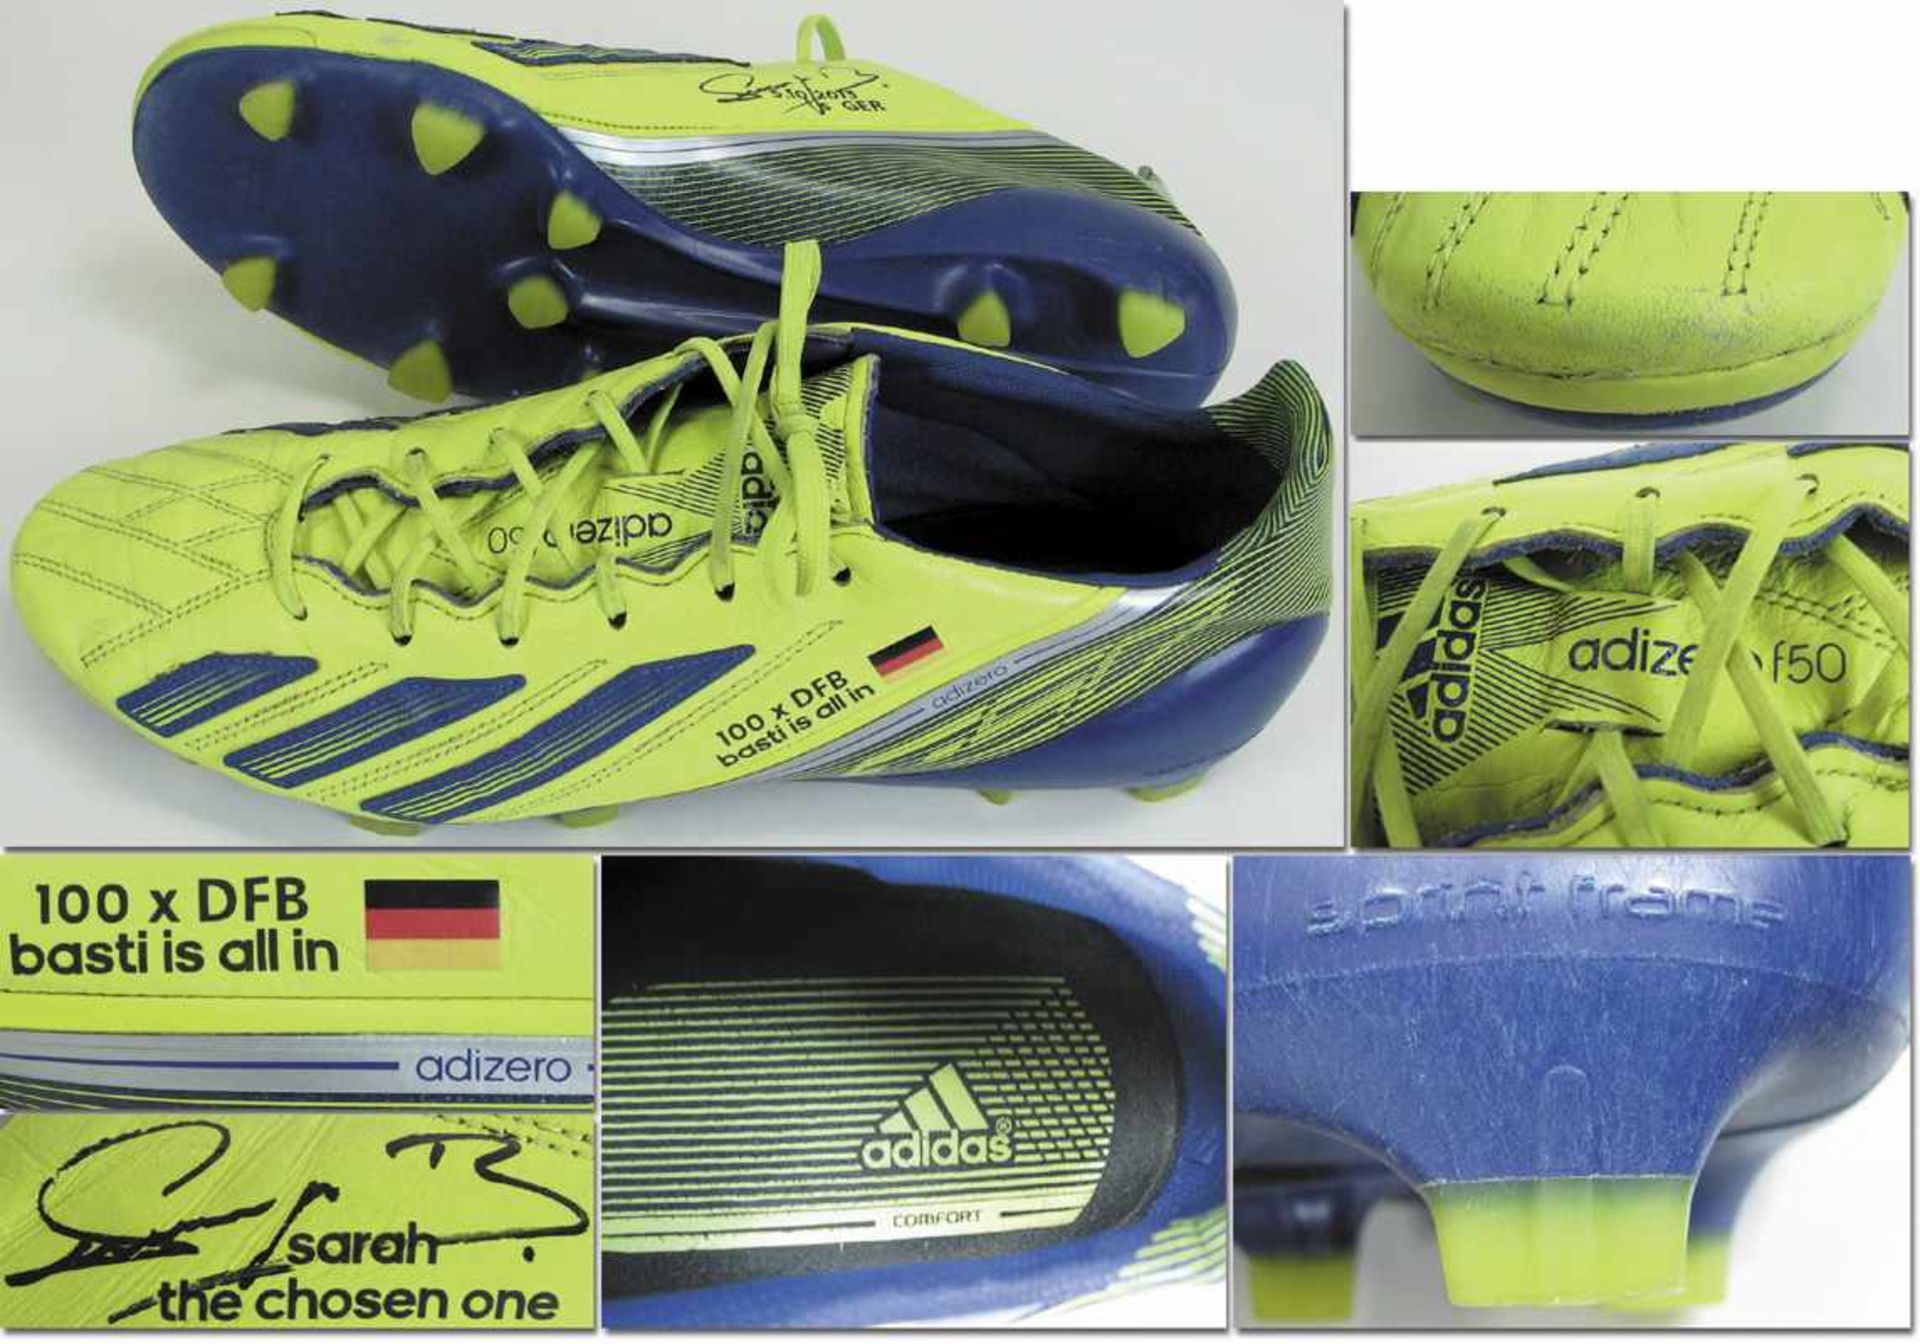 Adidas Football Boots Bastian Schweinsteiger 2013 - Match worn football boots of Bastian